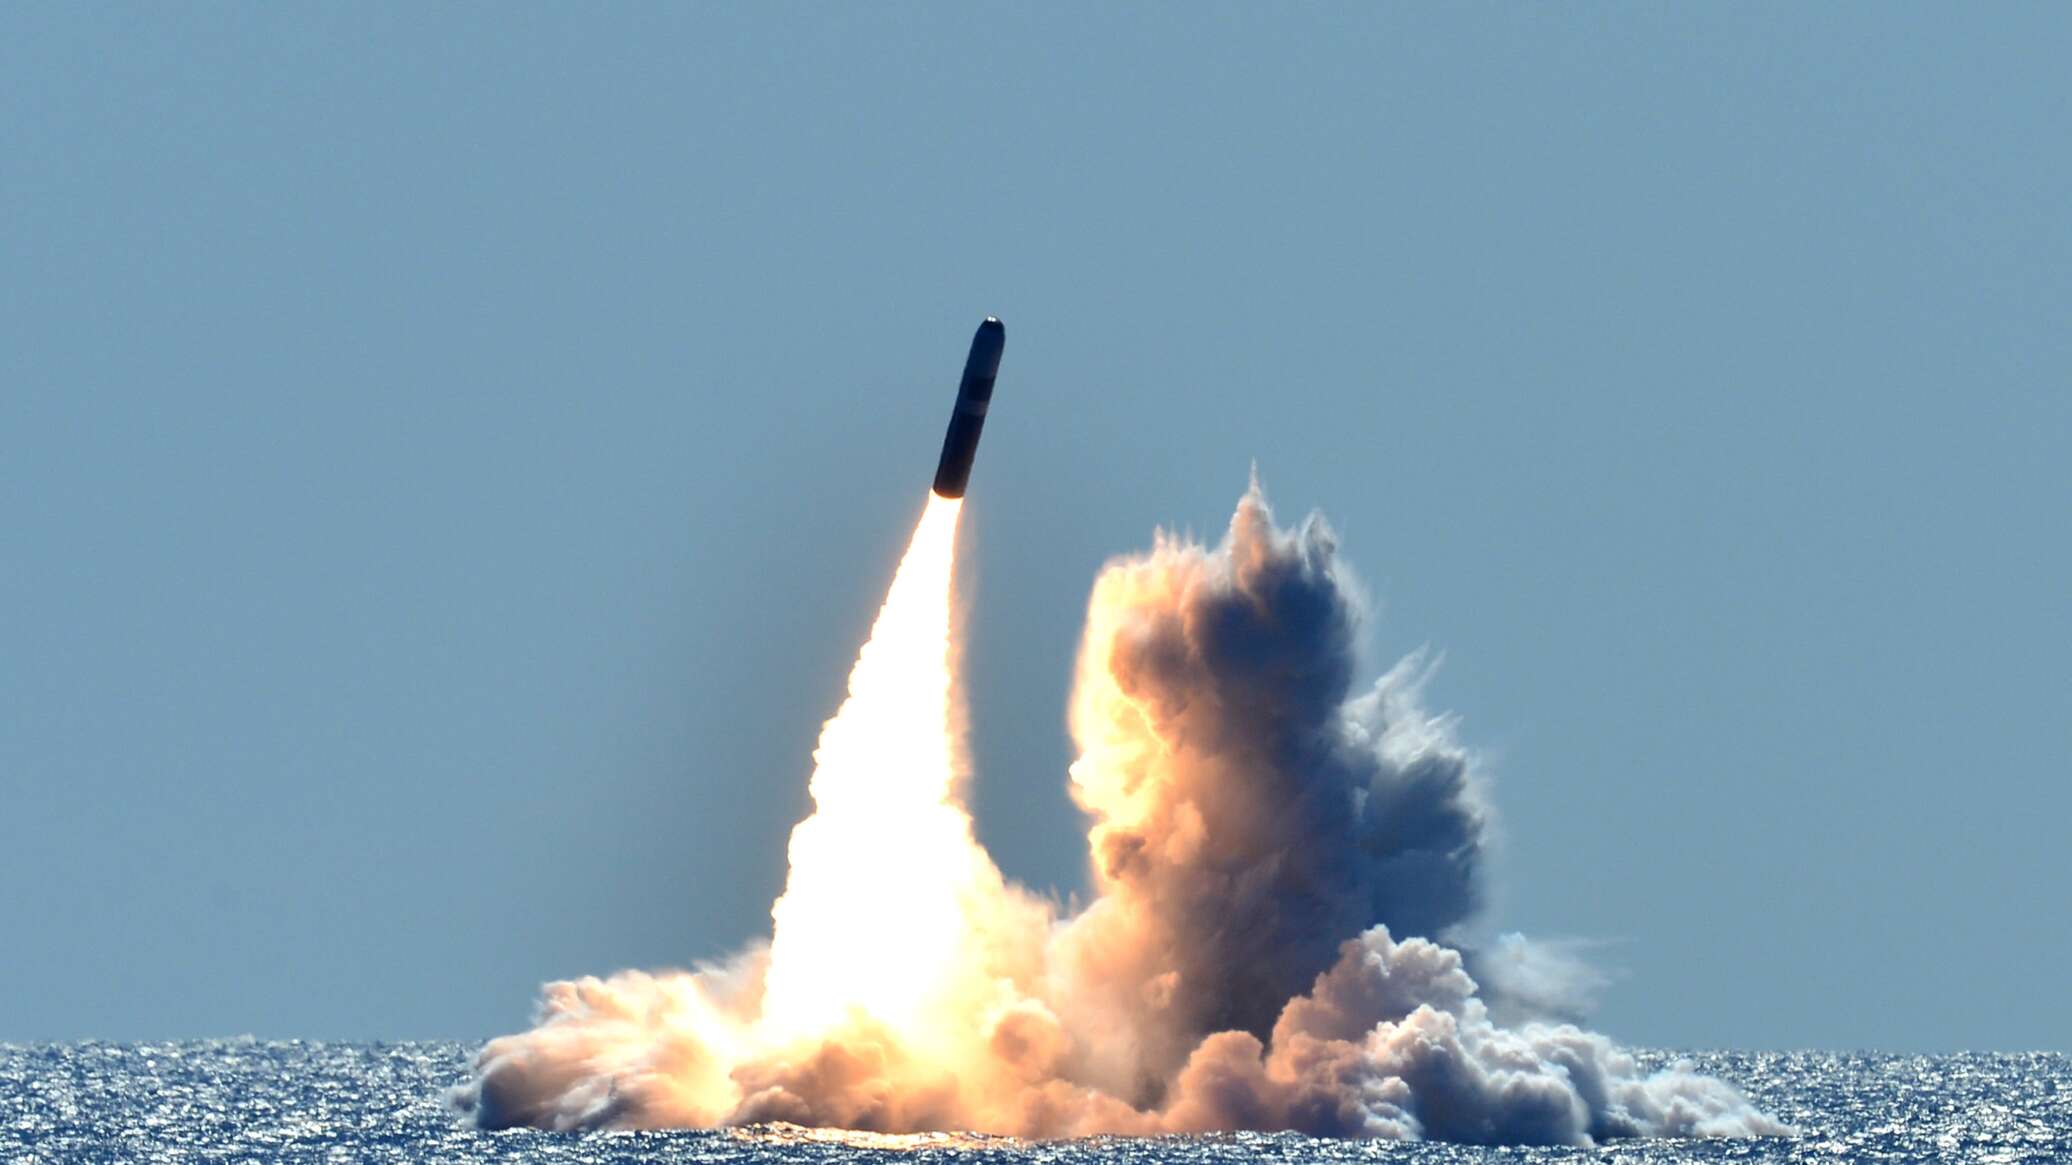 فشل إطلاق صاروخ نووي بريطاني من الغواصة وسقوطه بجوارها... فيديو